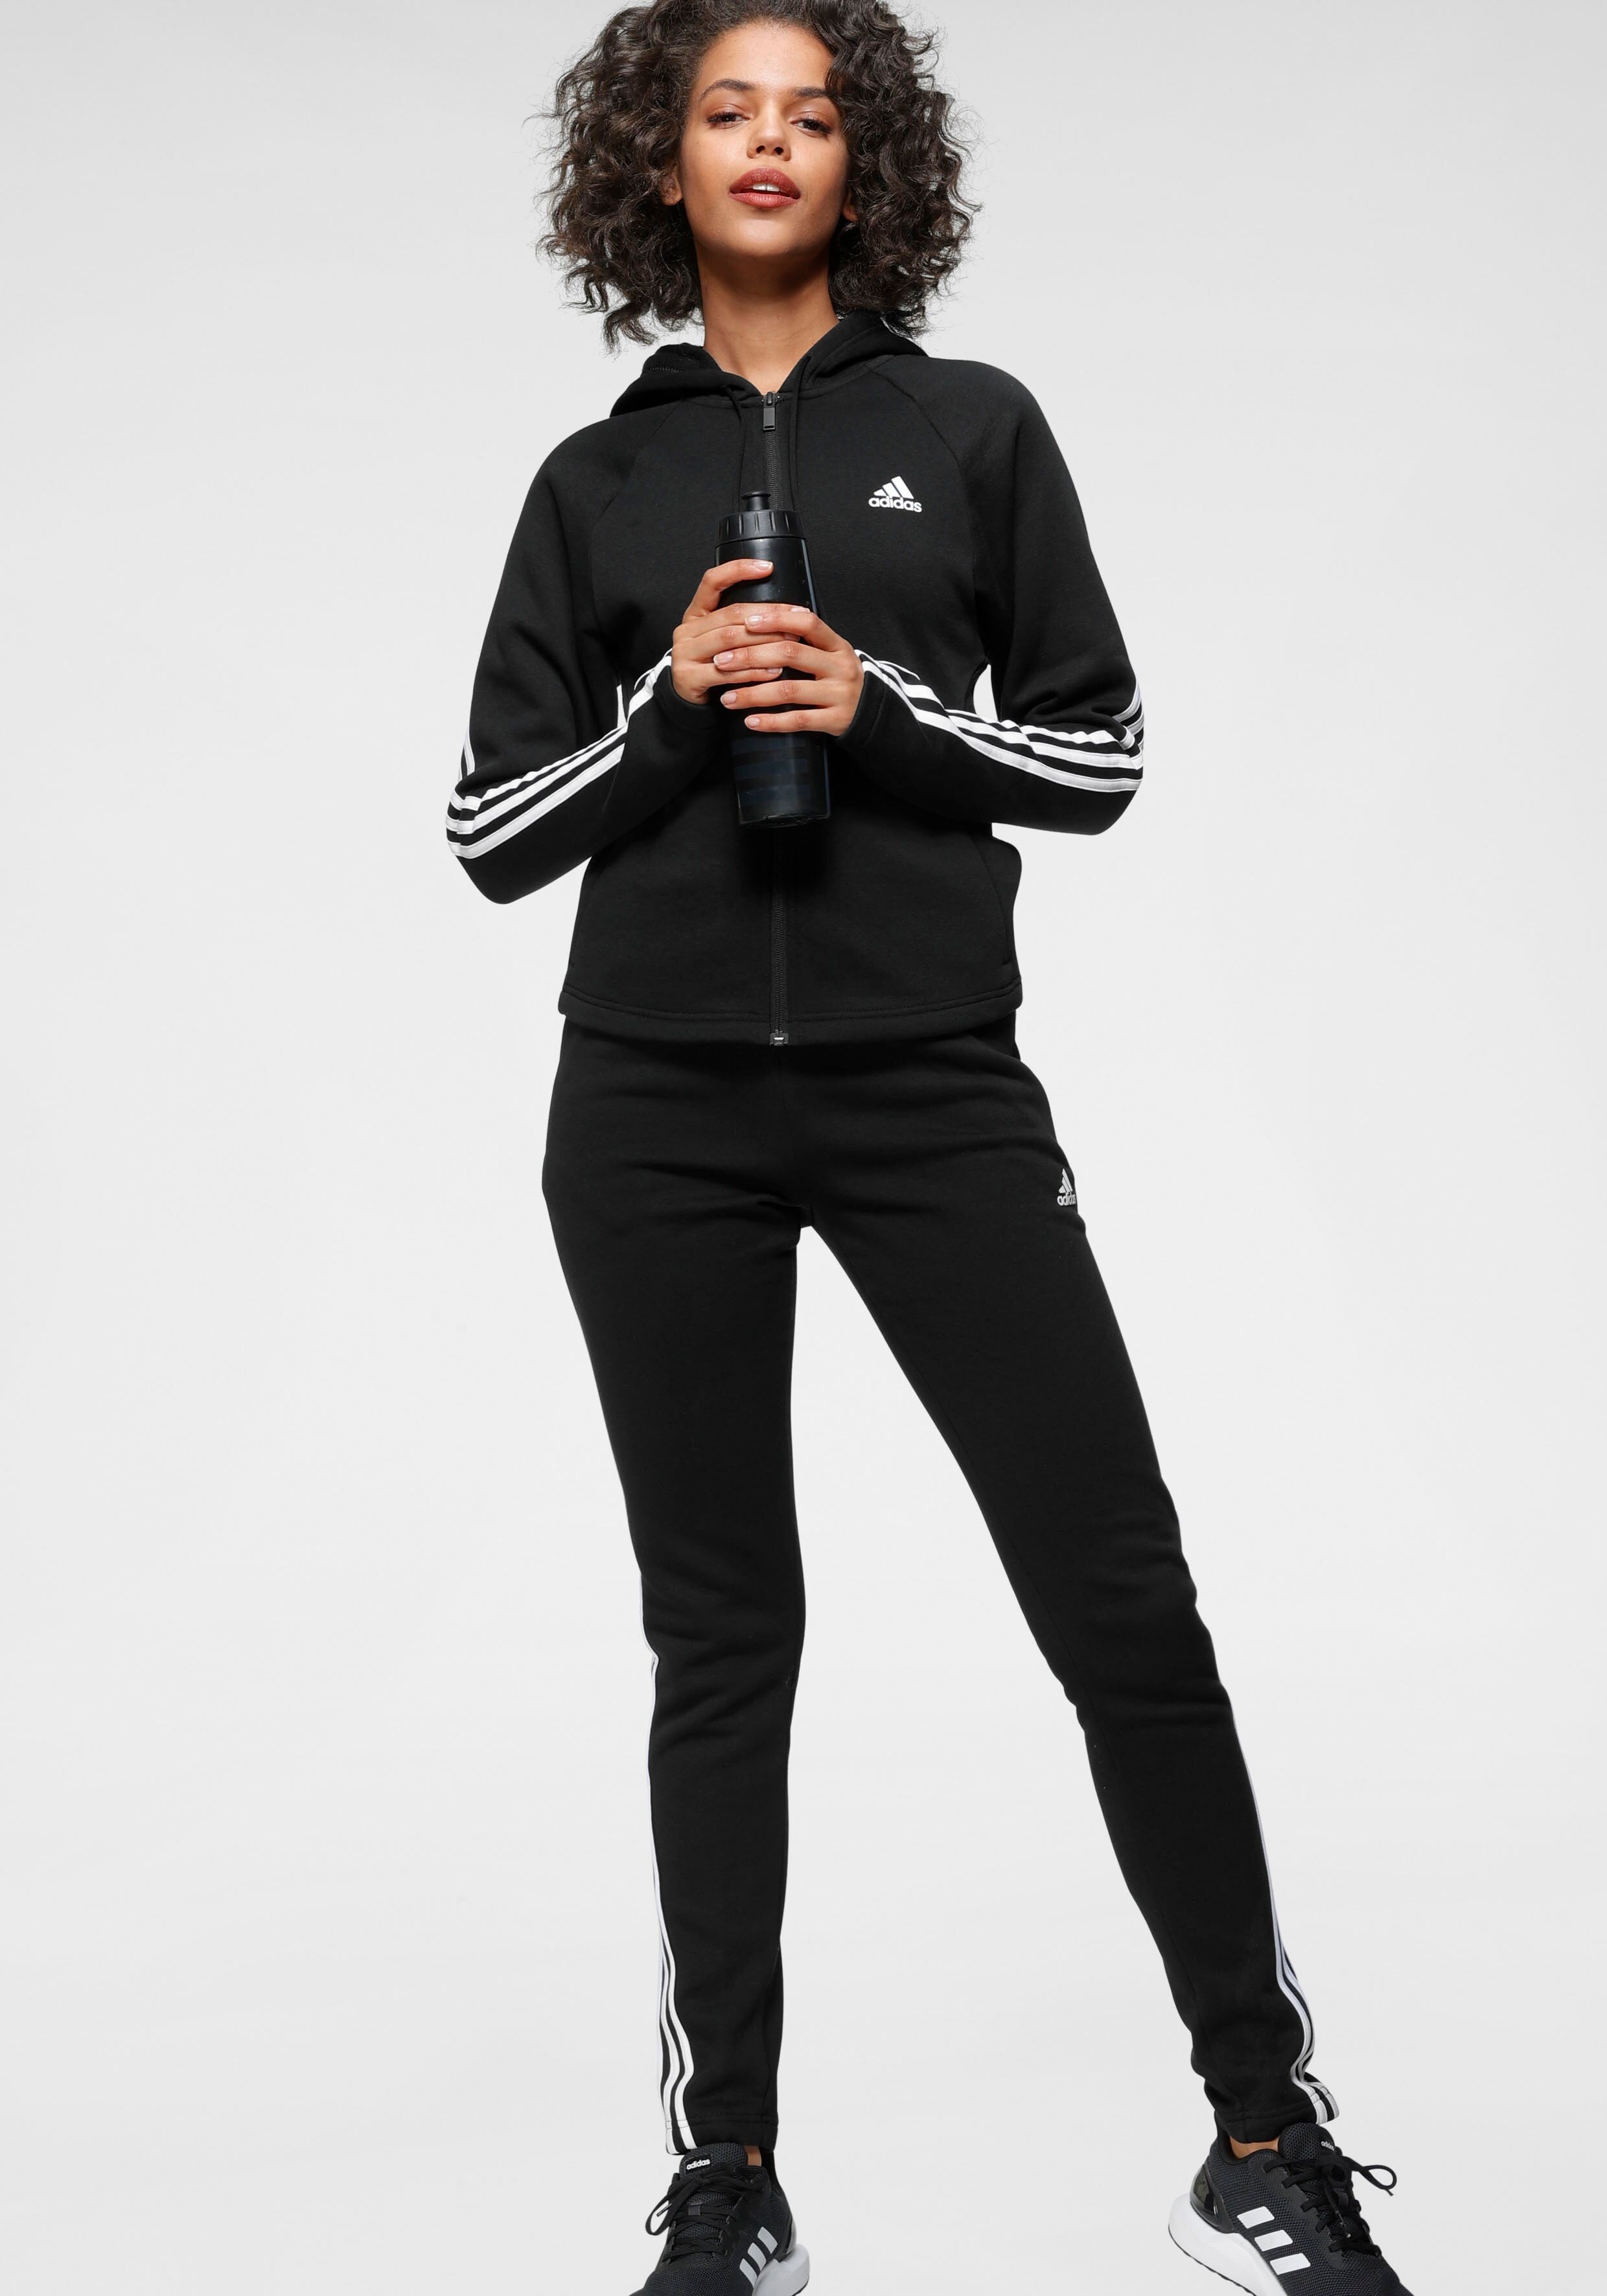 Adidas Performance Trainingsanzug »WOMEN ENERGY TRACKSUIT« schwarz  L (42/44) M (38/40) S (34/36) XL (46/48) XS (30/32) XXL (50/52)